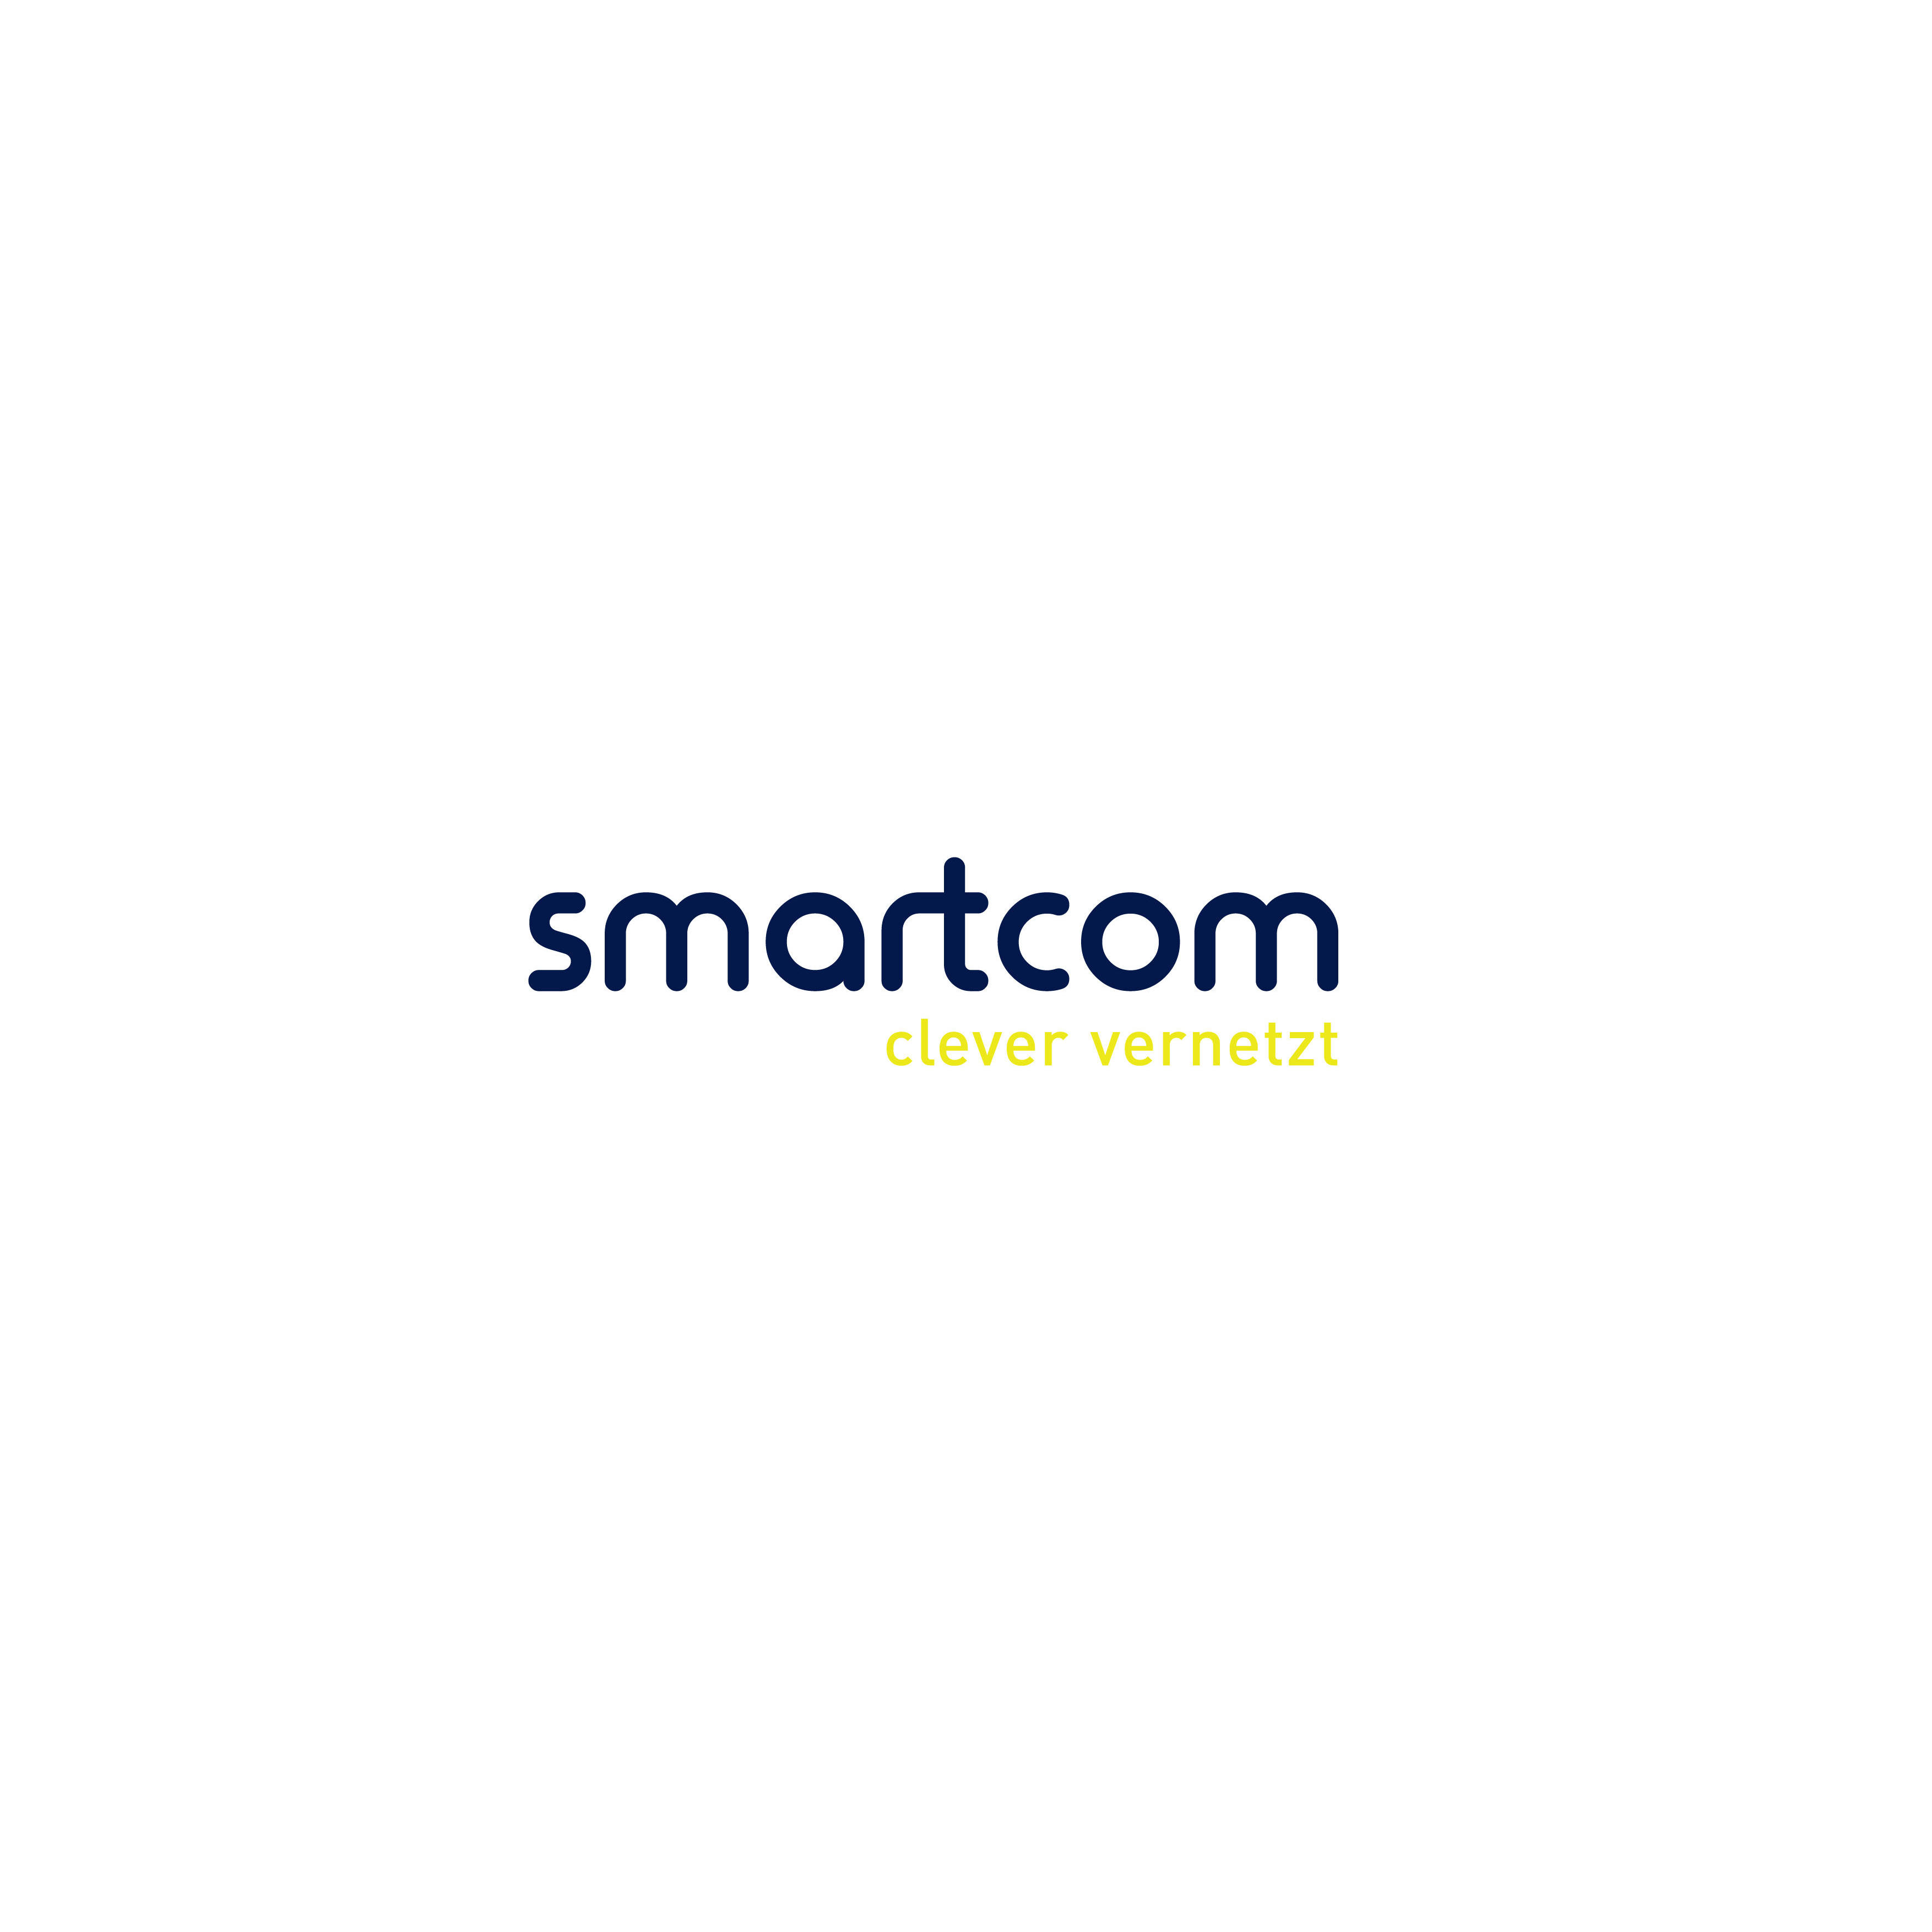 smartcom schweiz ag Logo